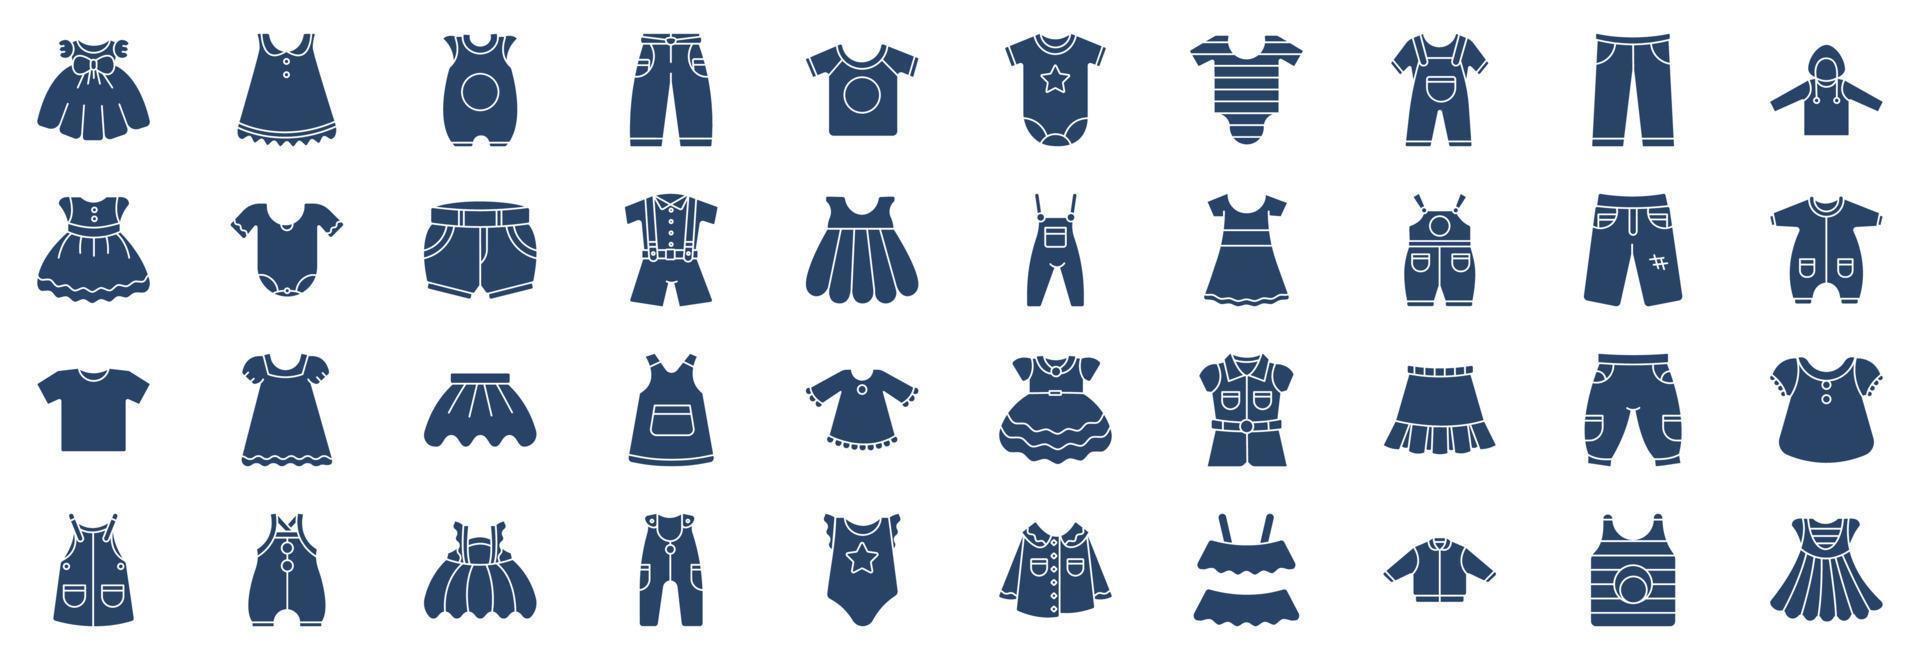 samling av ikoner relaterad till barn Kläder och klänning, Inklusive ikoner tycka om kort, byxor, kort, och Mer. vektor illustrationer, pixel perfekt uppsättning